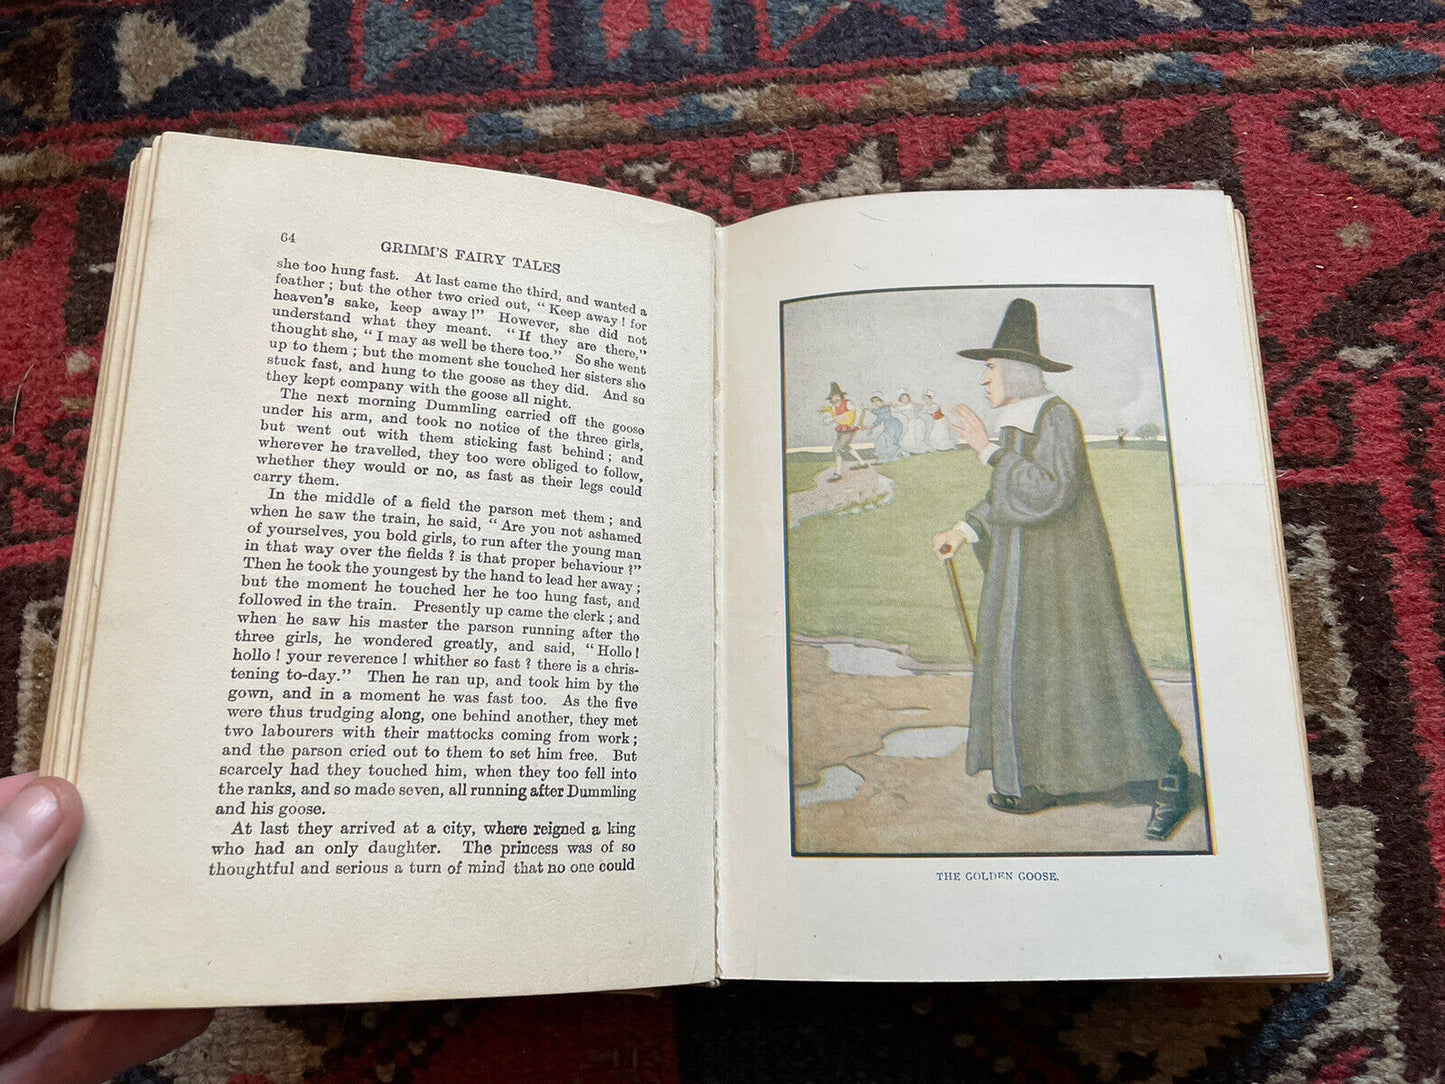 Grimm's Fairy Tales : Colour Illustrations : Antique Copy c1920 : Henry Altemus